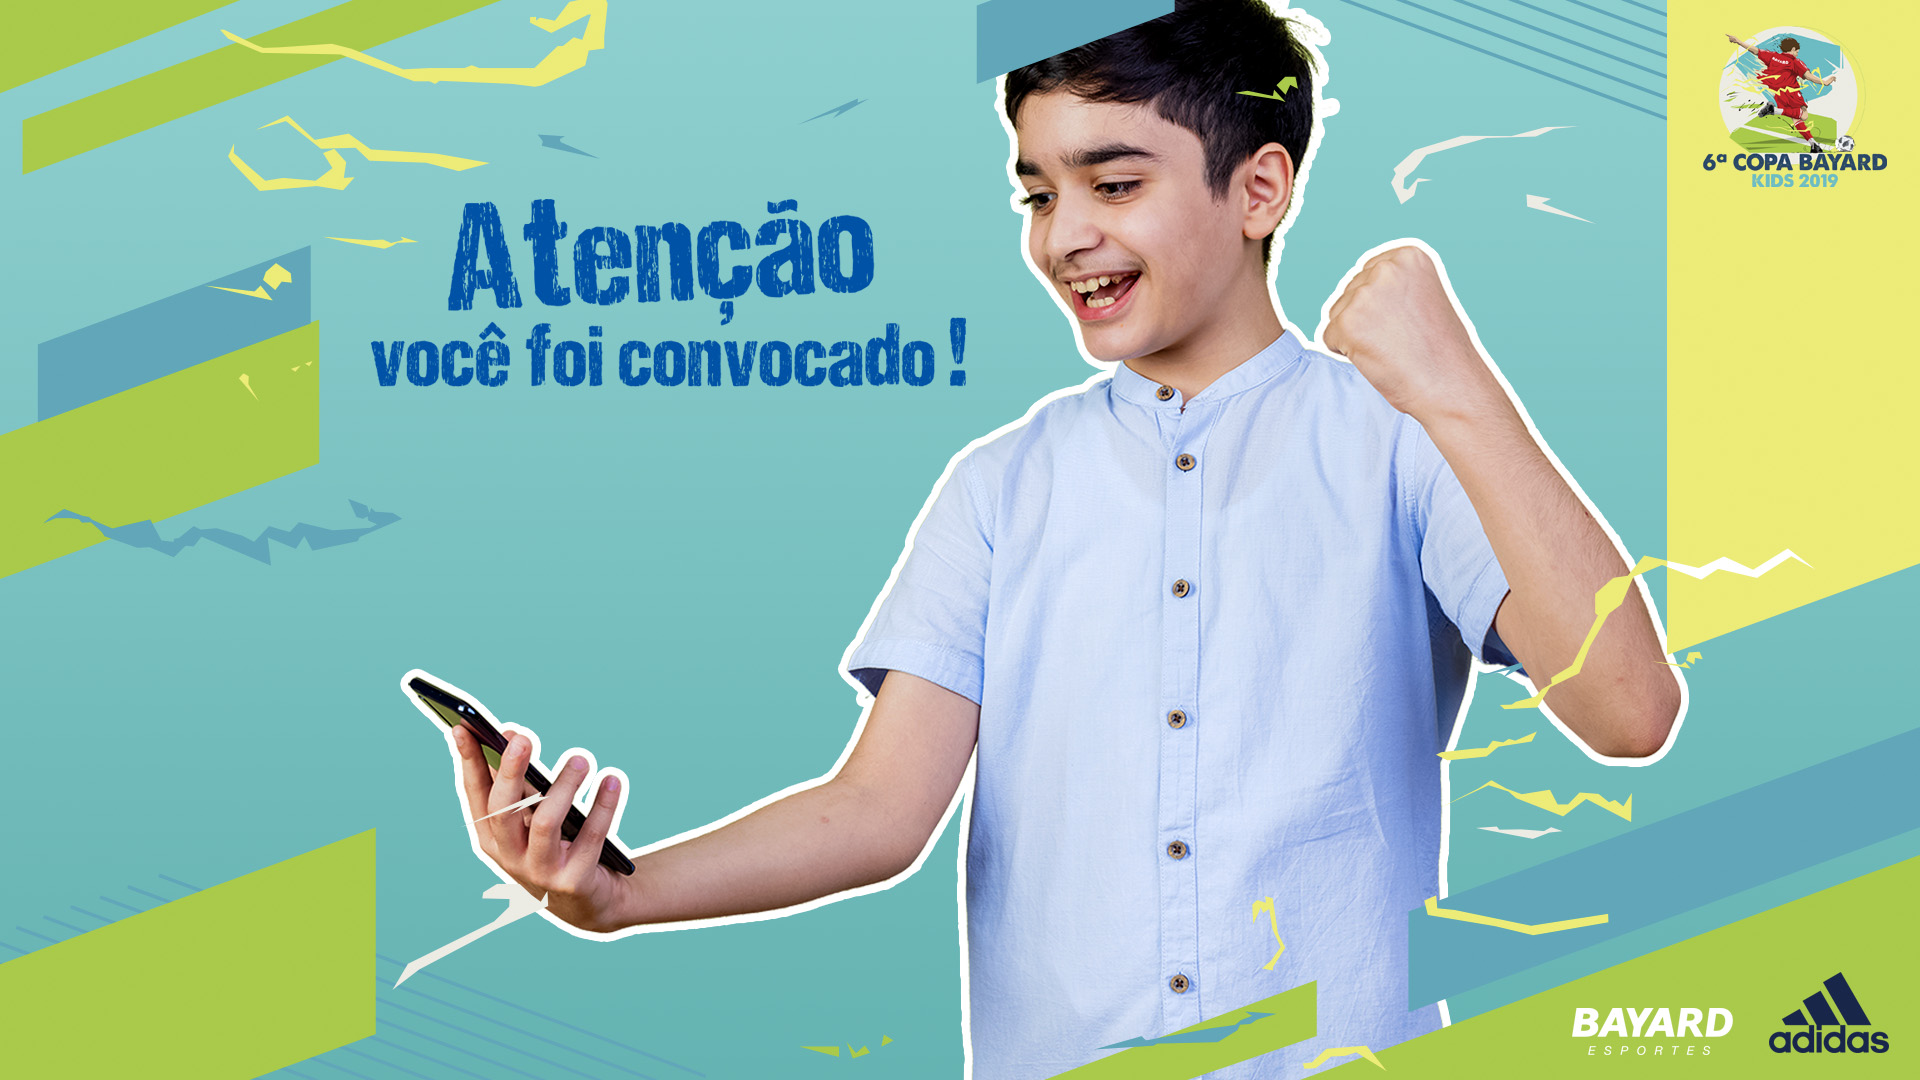 Imagem do key visual da 6ª Copa Bayard Kids - Adidas. Garoto comemorando olhando para o celular, com o título: Atenção você foi convocado.